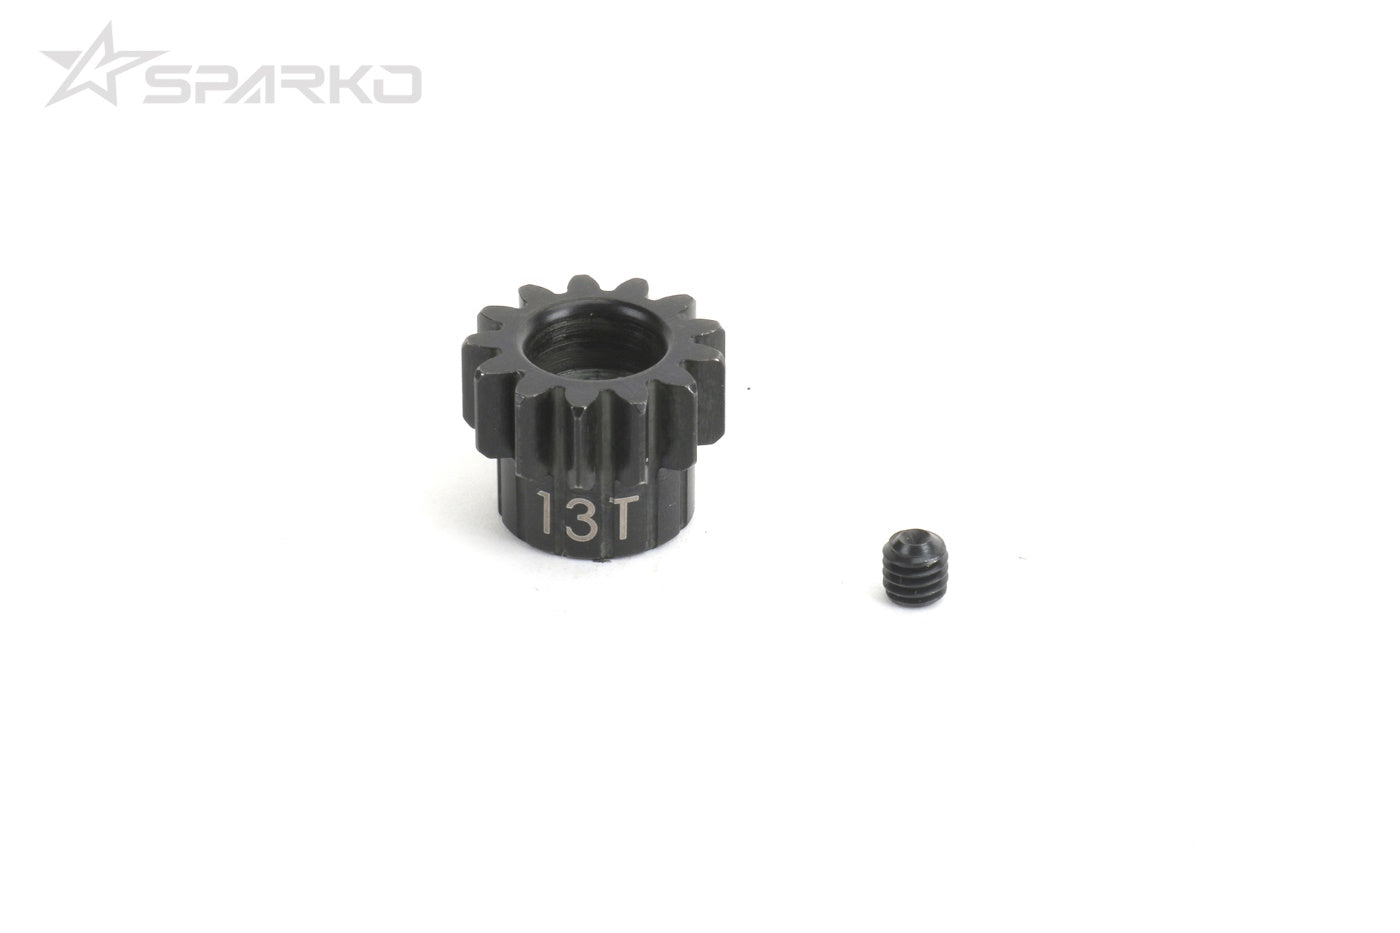 Sparko F8E Pinion Gear 13T 5mm